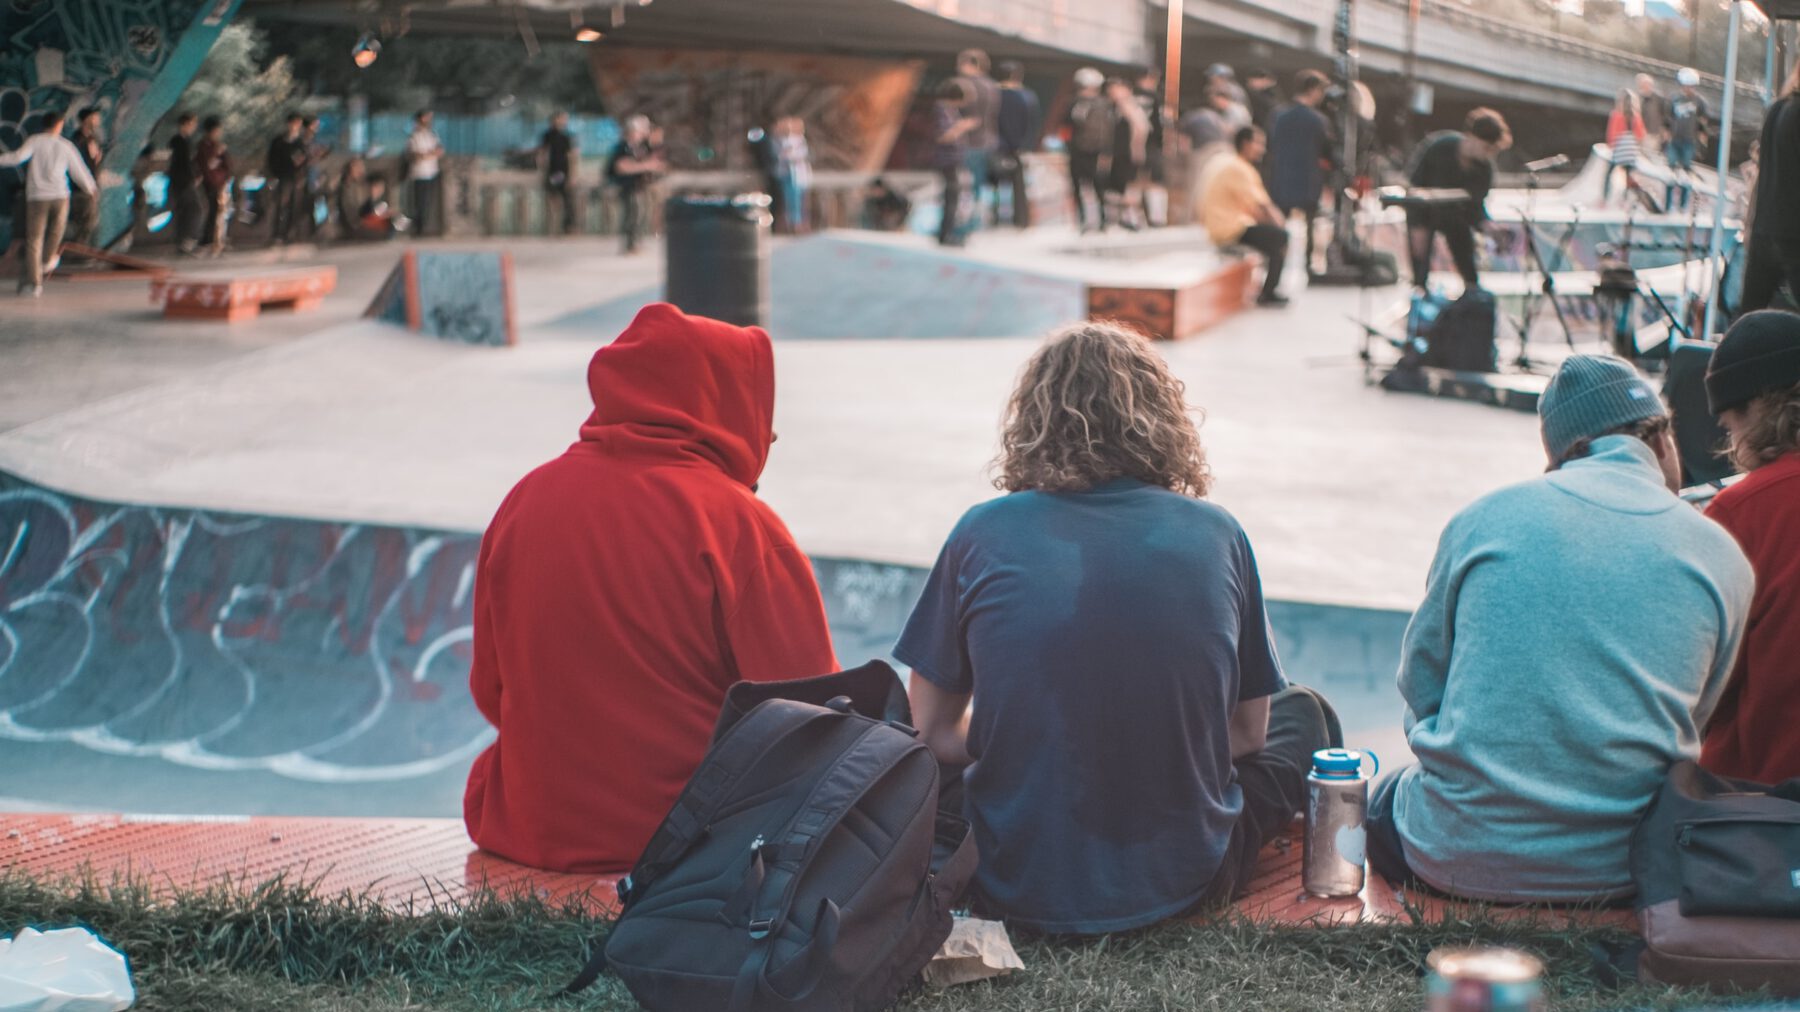 Jugendliche sitzen in einem Skatepark voller Menschen und chillen